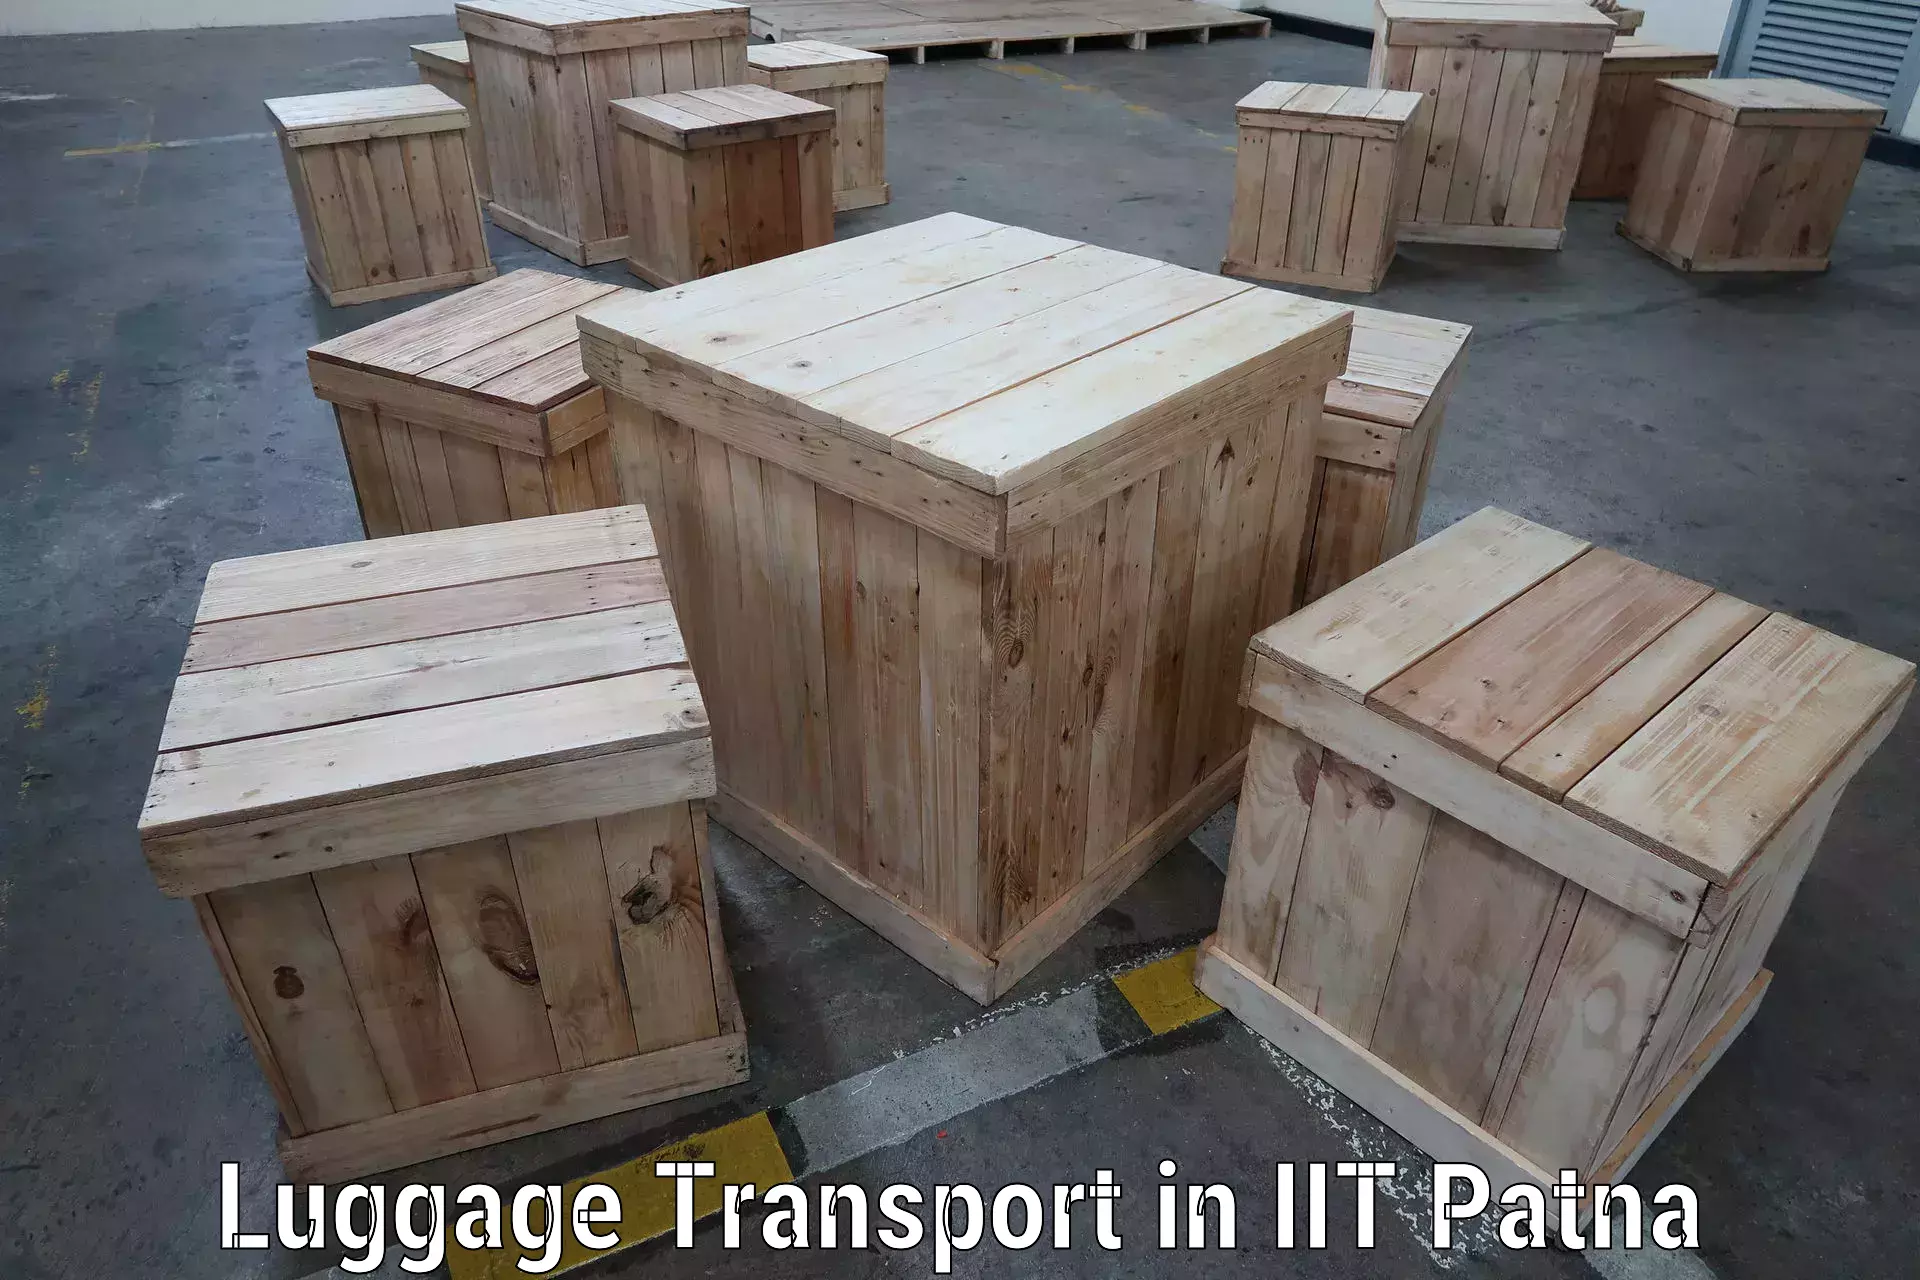 Door-to-door baggage service in IIT Patna